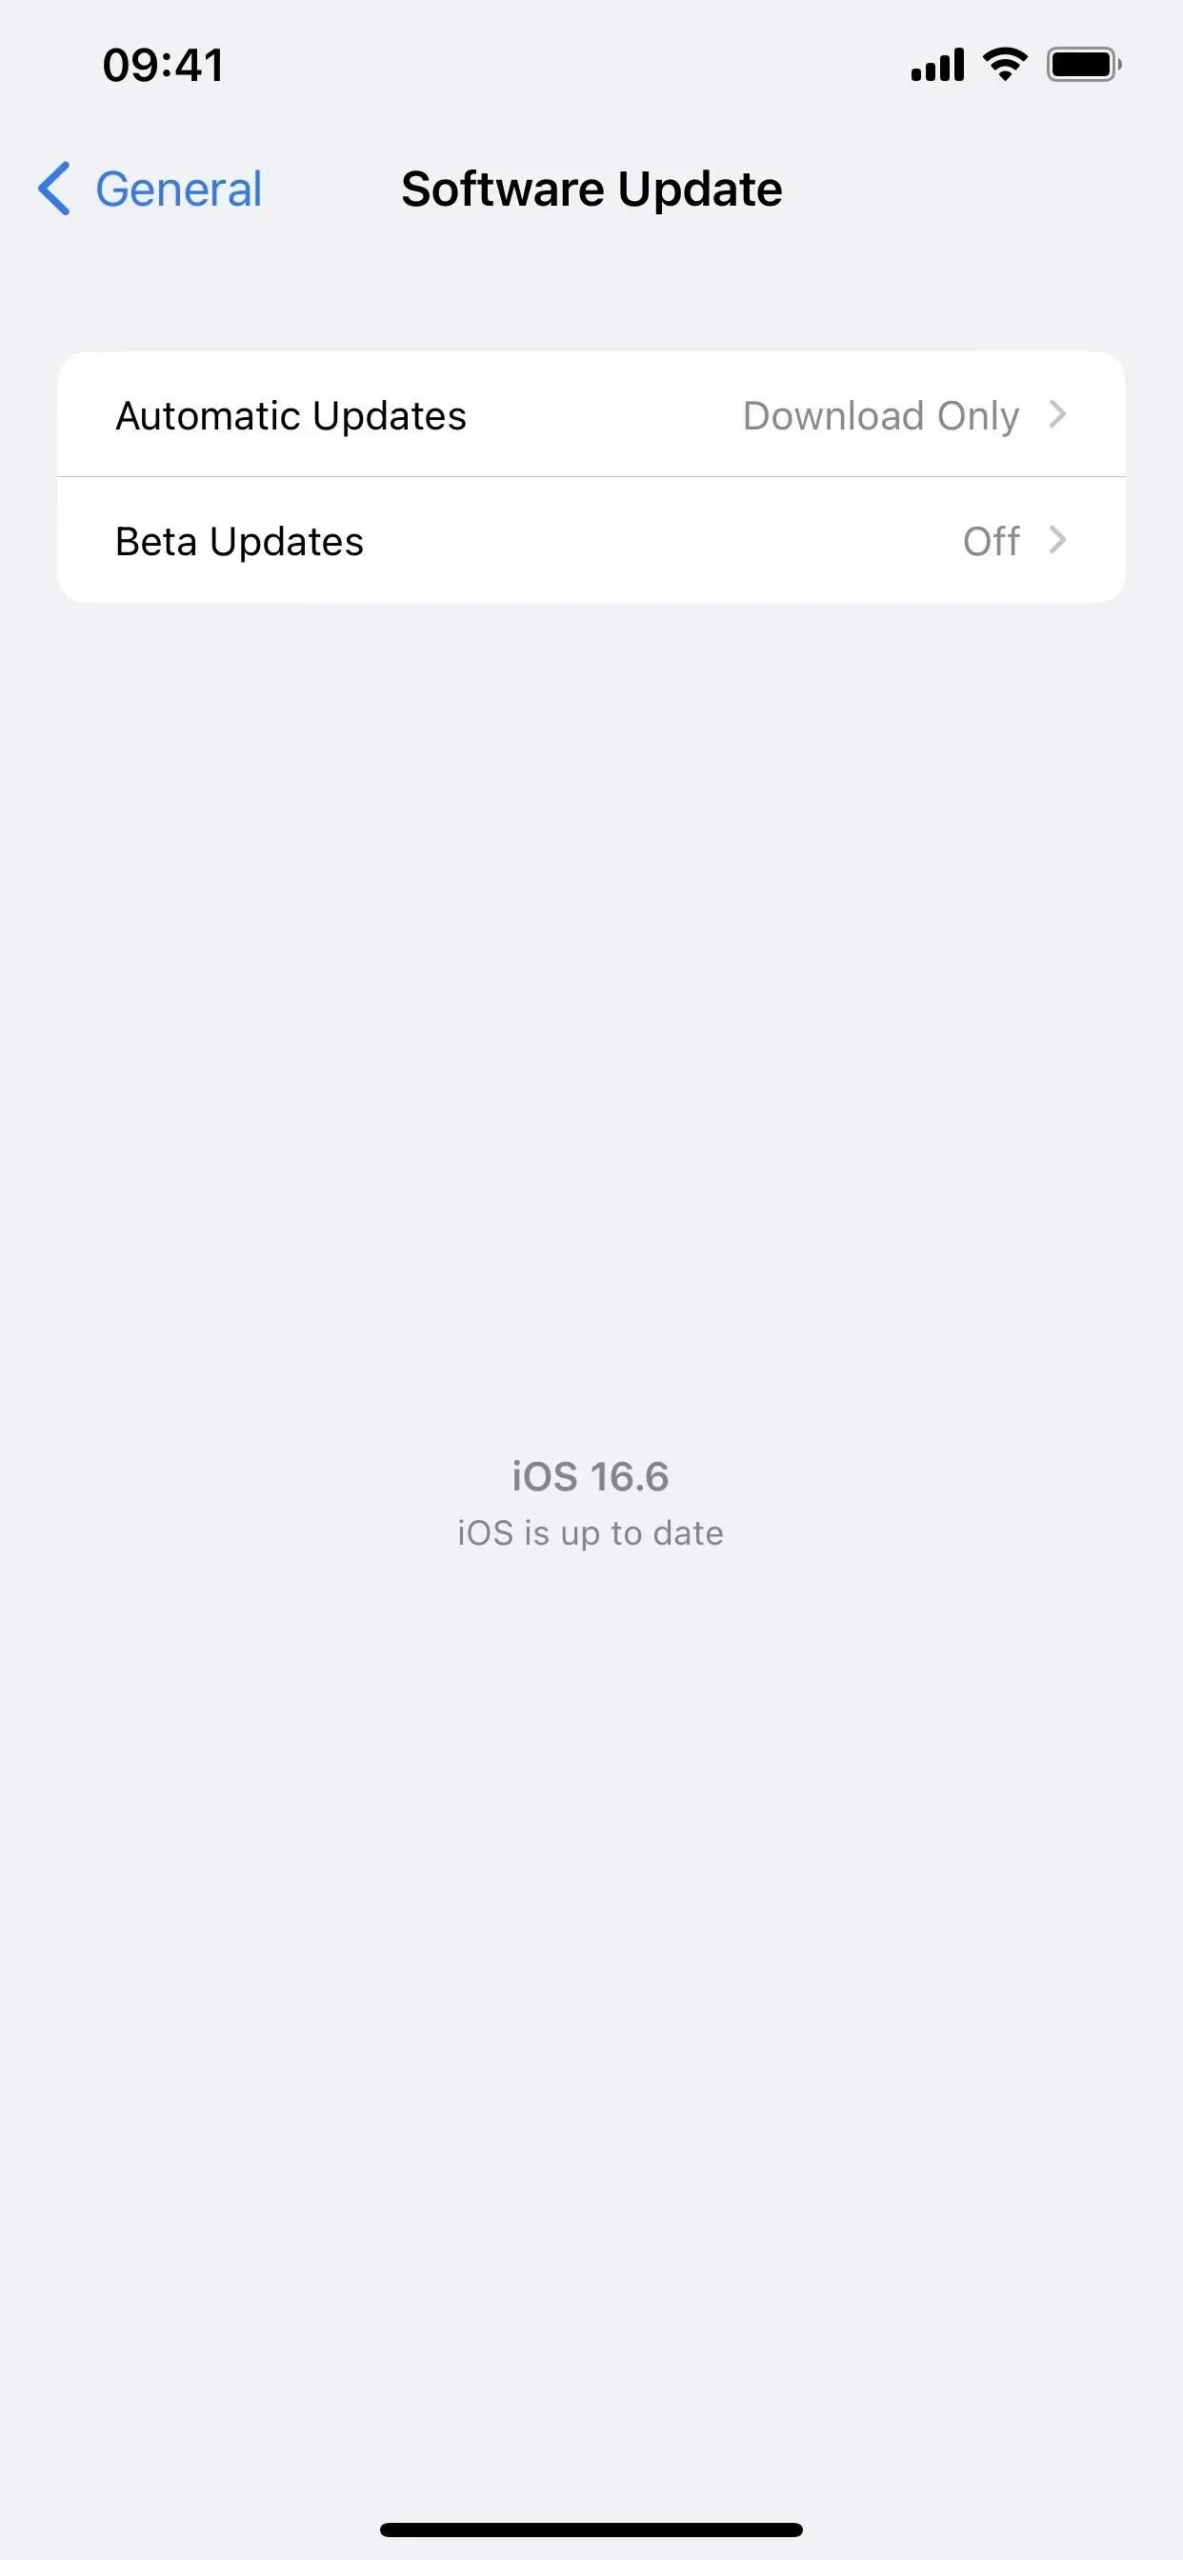 Comment télécharger et installer iOS 17.4 bêta pour essayer d’abord les nouvelles fonctionnalités de l’iPhone